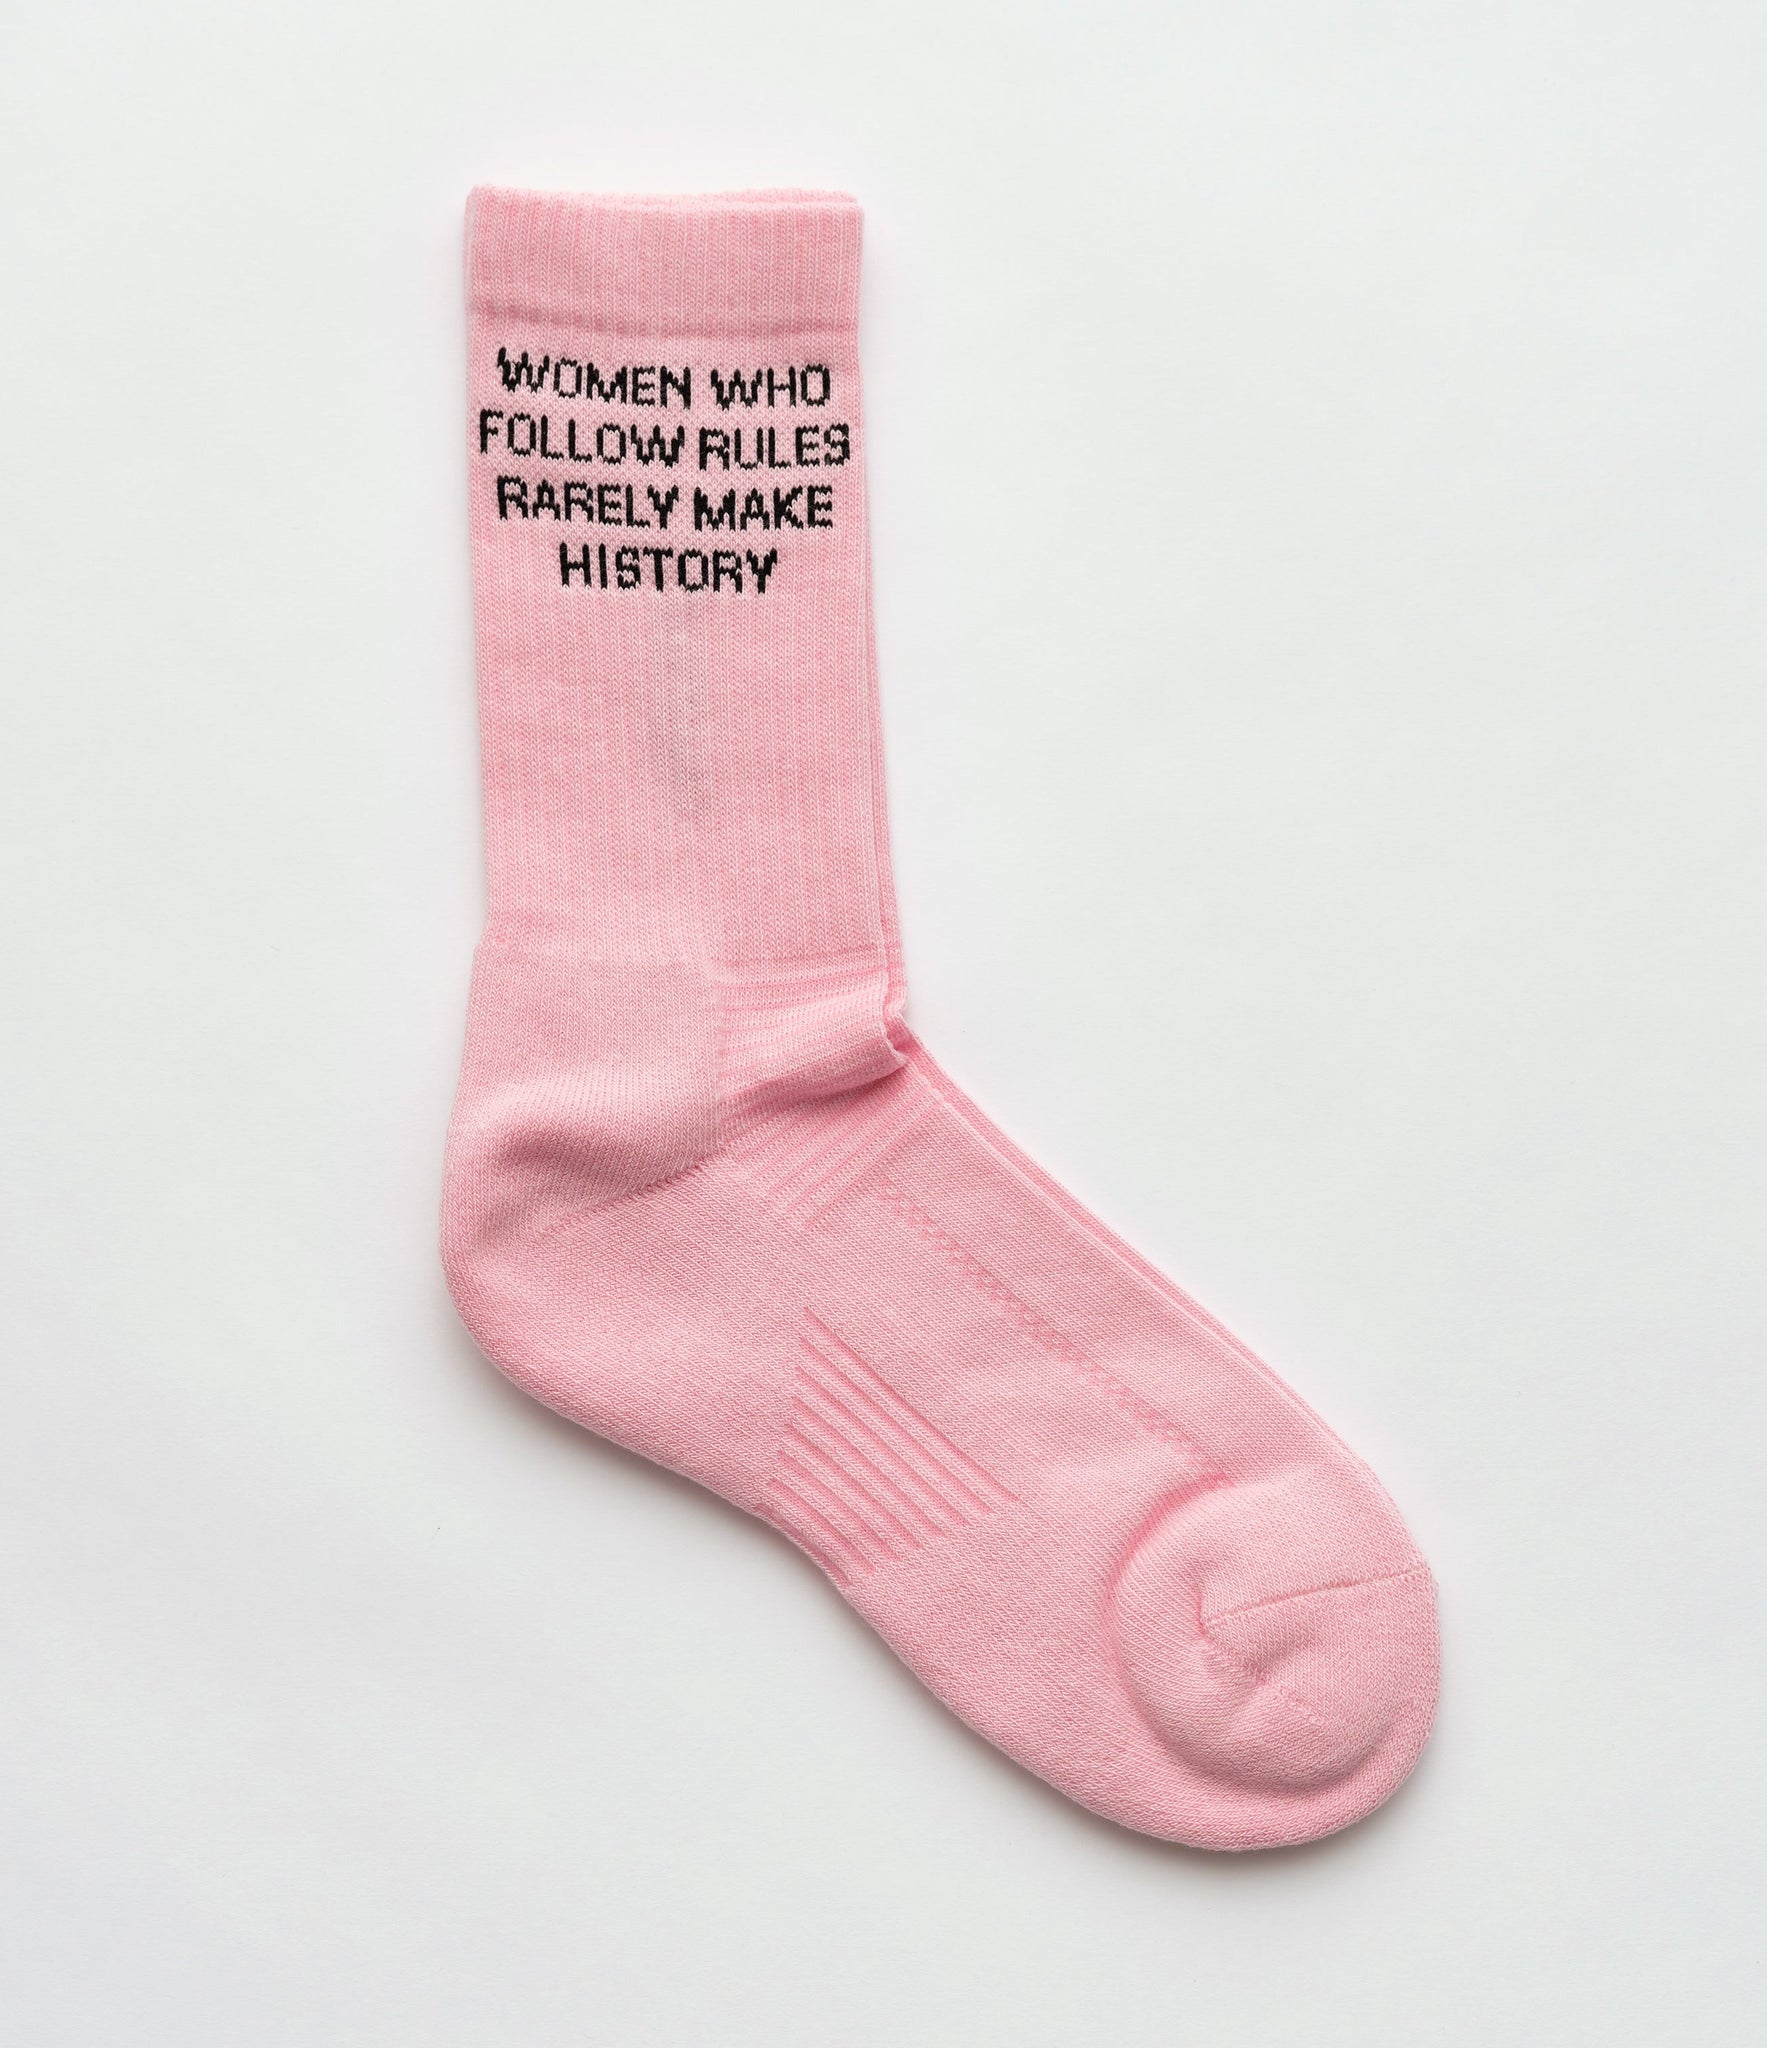 Socks - Female rules